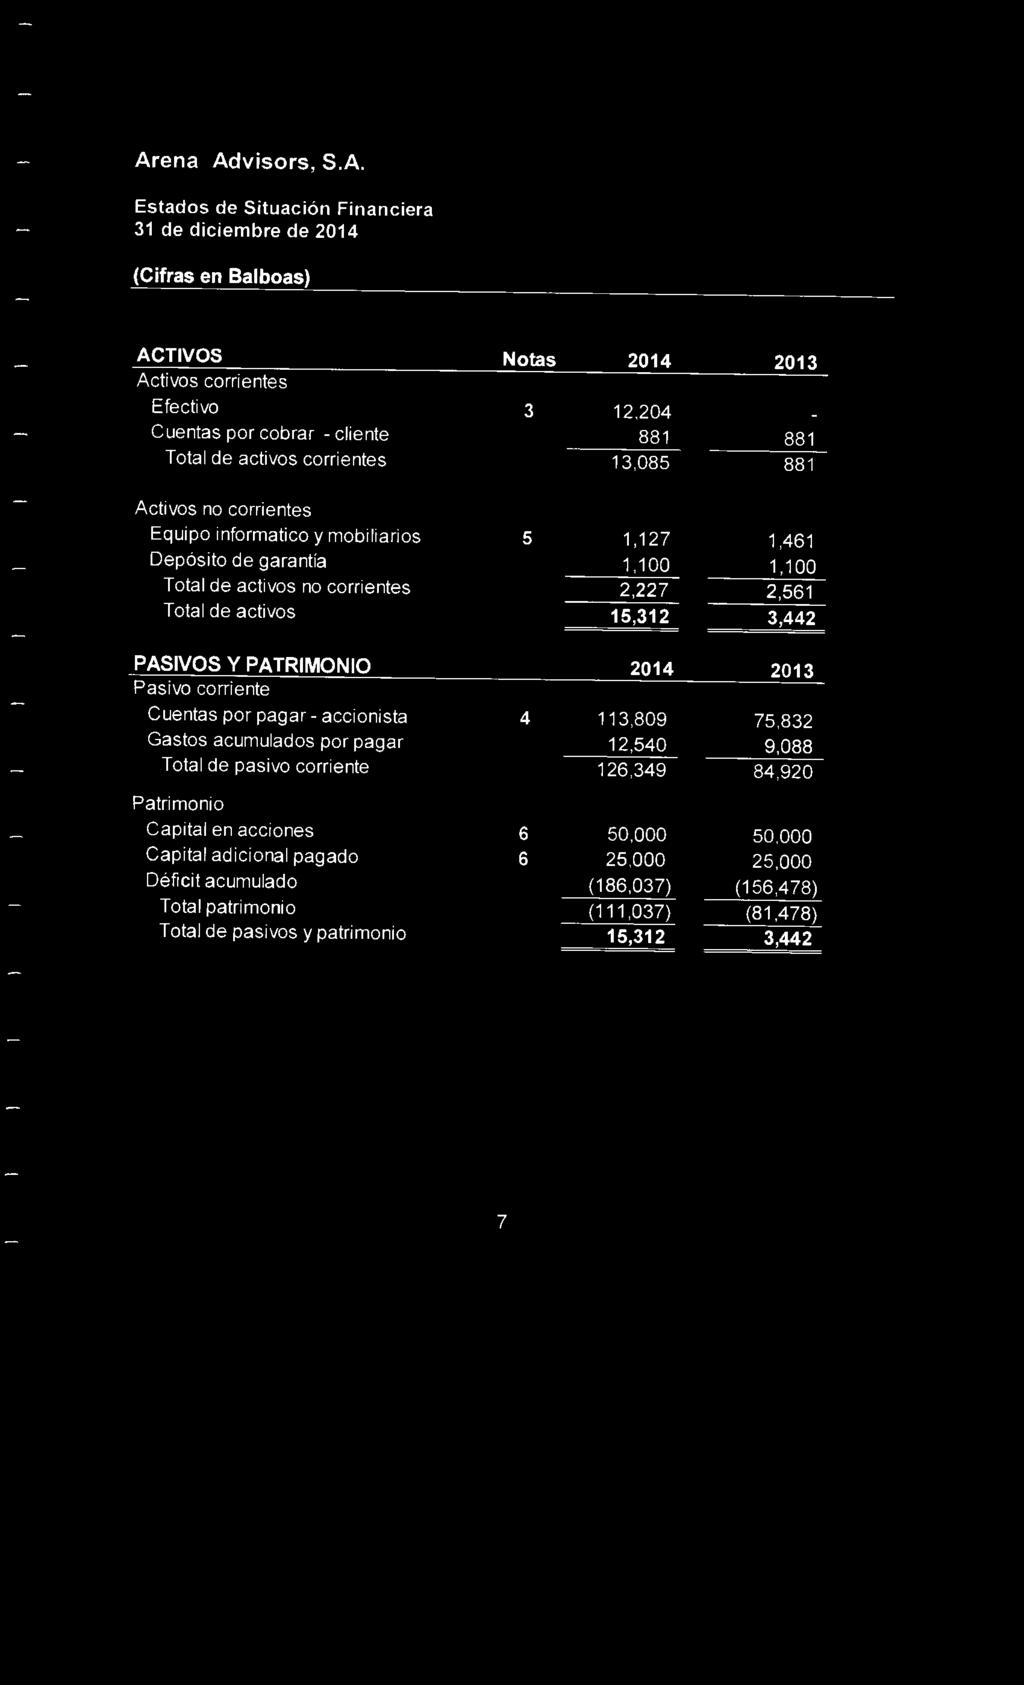 Arena Advisors, S.A. Estados de Situación Financiera ACTIVOS Activos corrientes Efectivo Cuentas por cobrar -cliente Total de activos corrientes Notas 2014 2013 3 12,204 881 881 13,085 881 Activos no